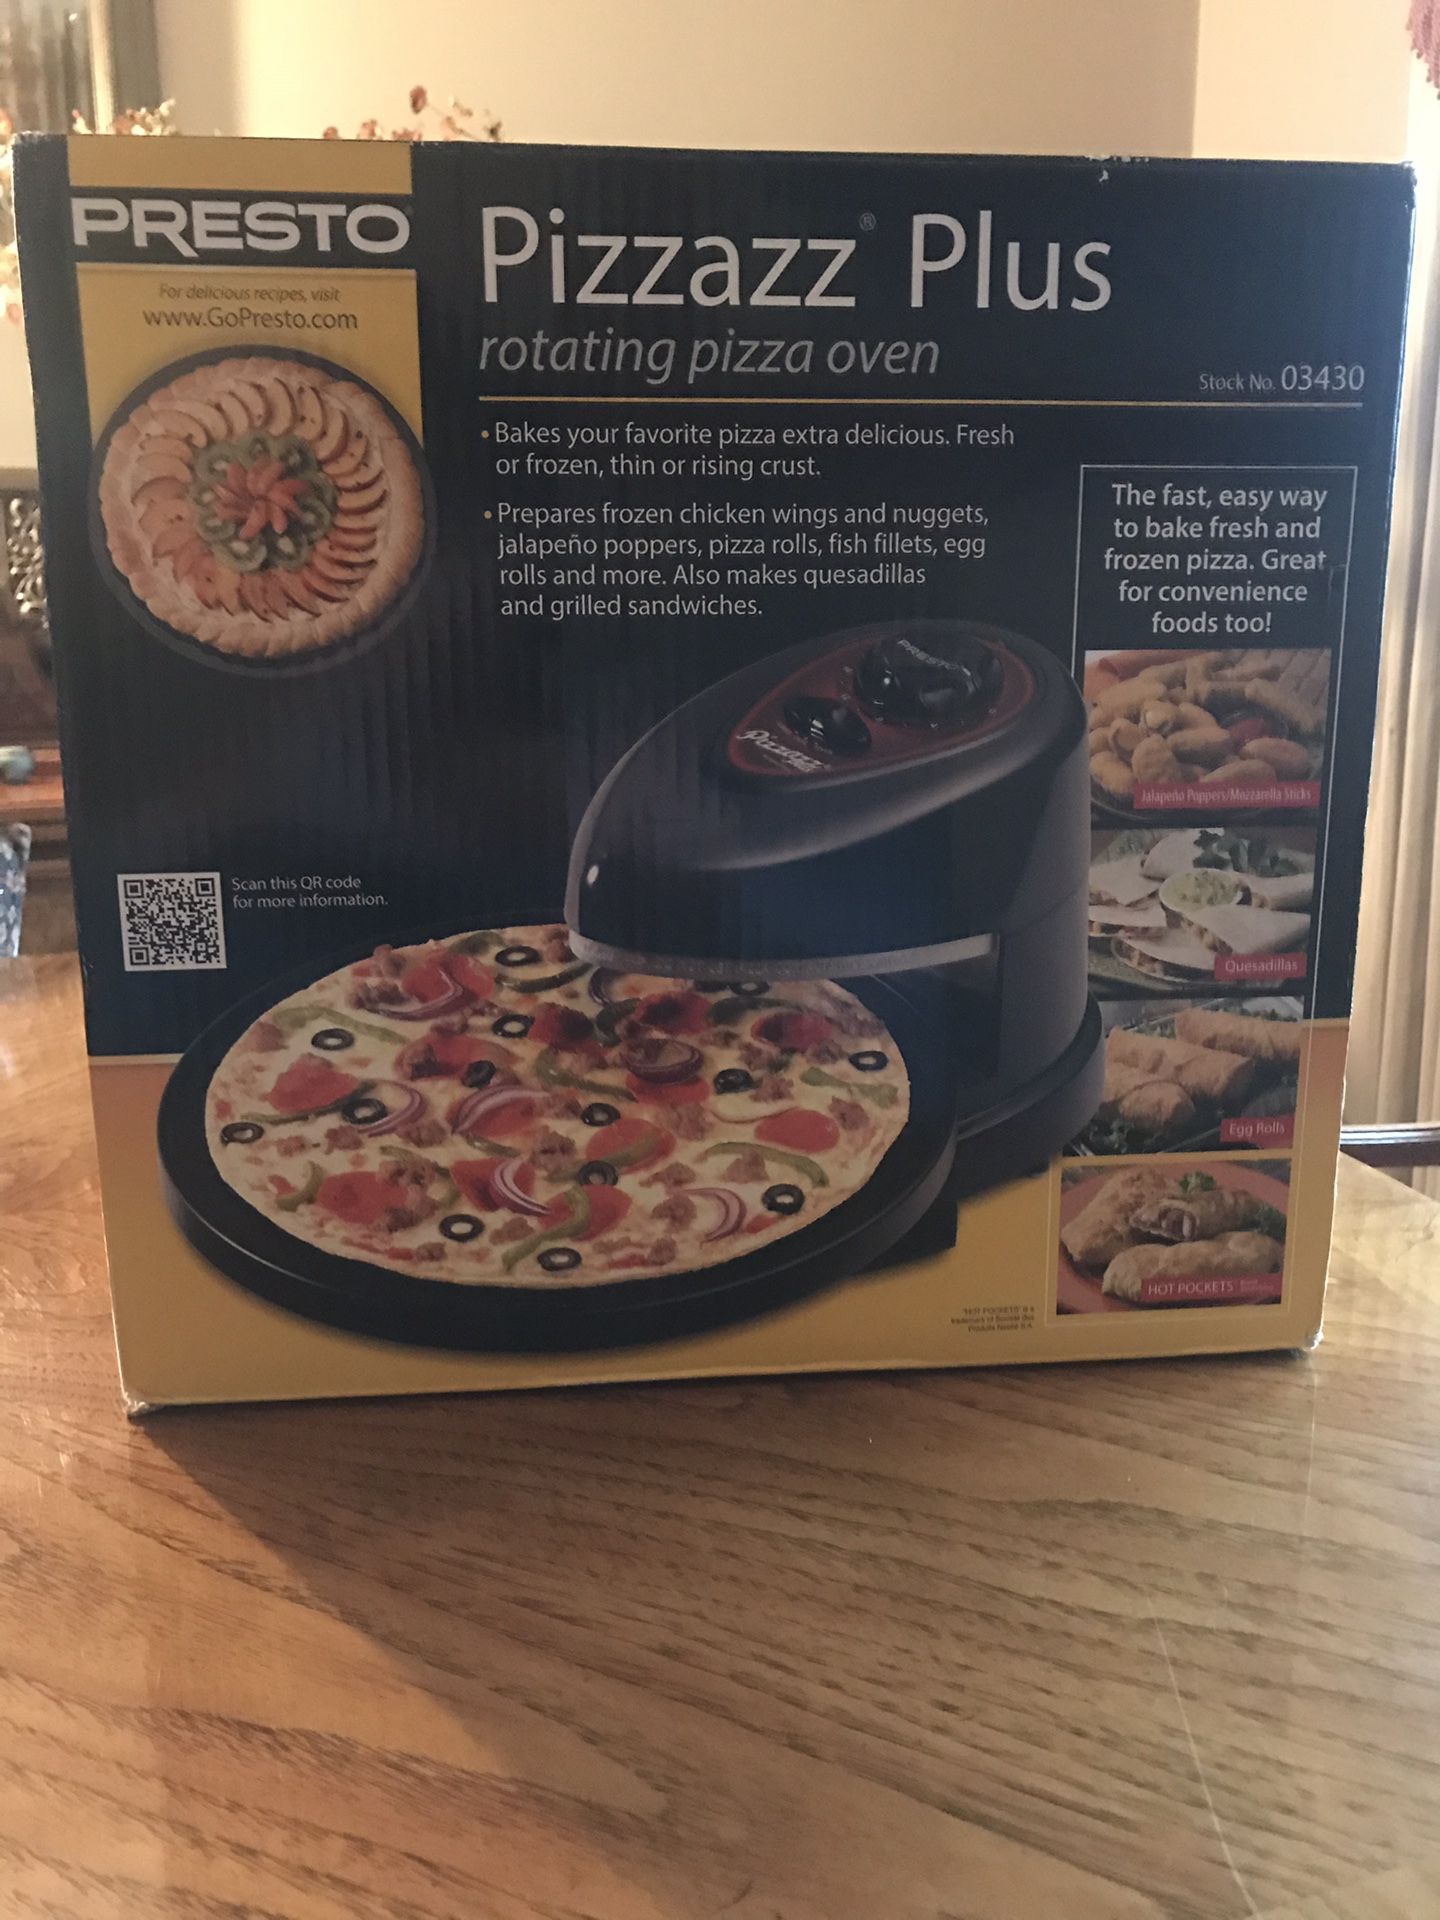 Pizzazz Plus—New in Box!